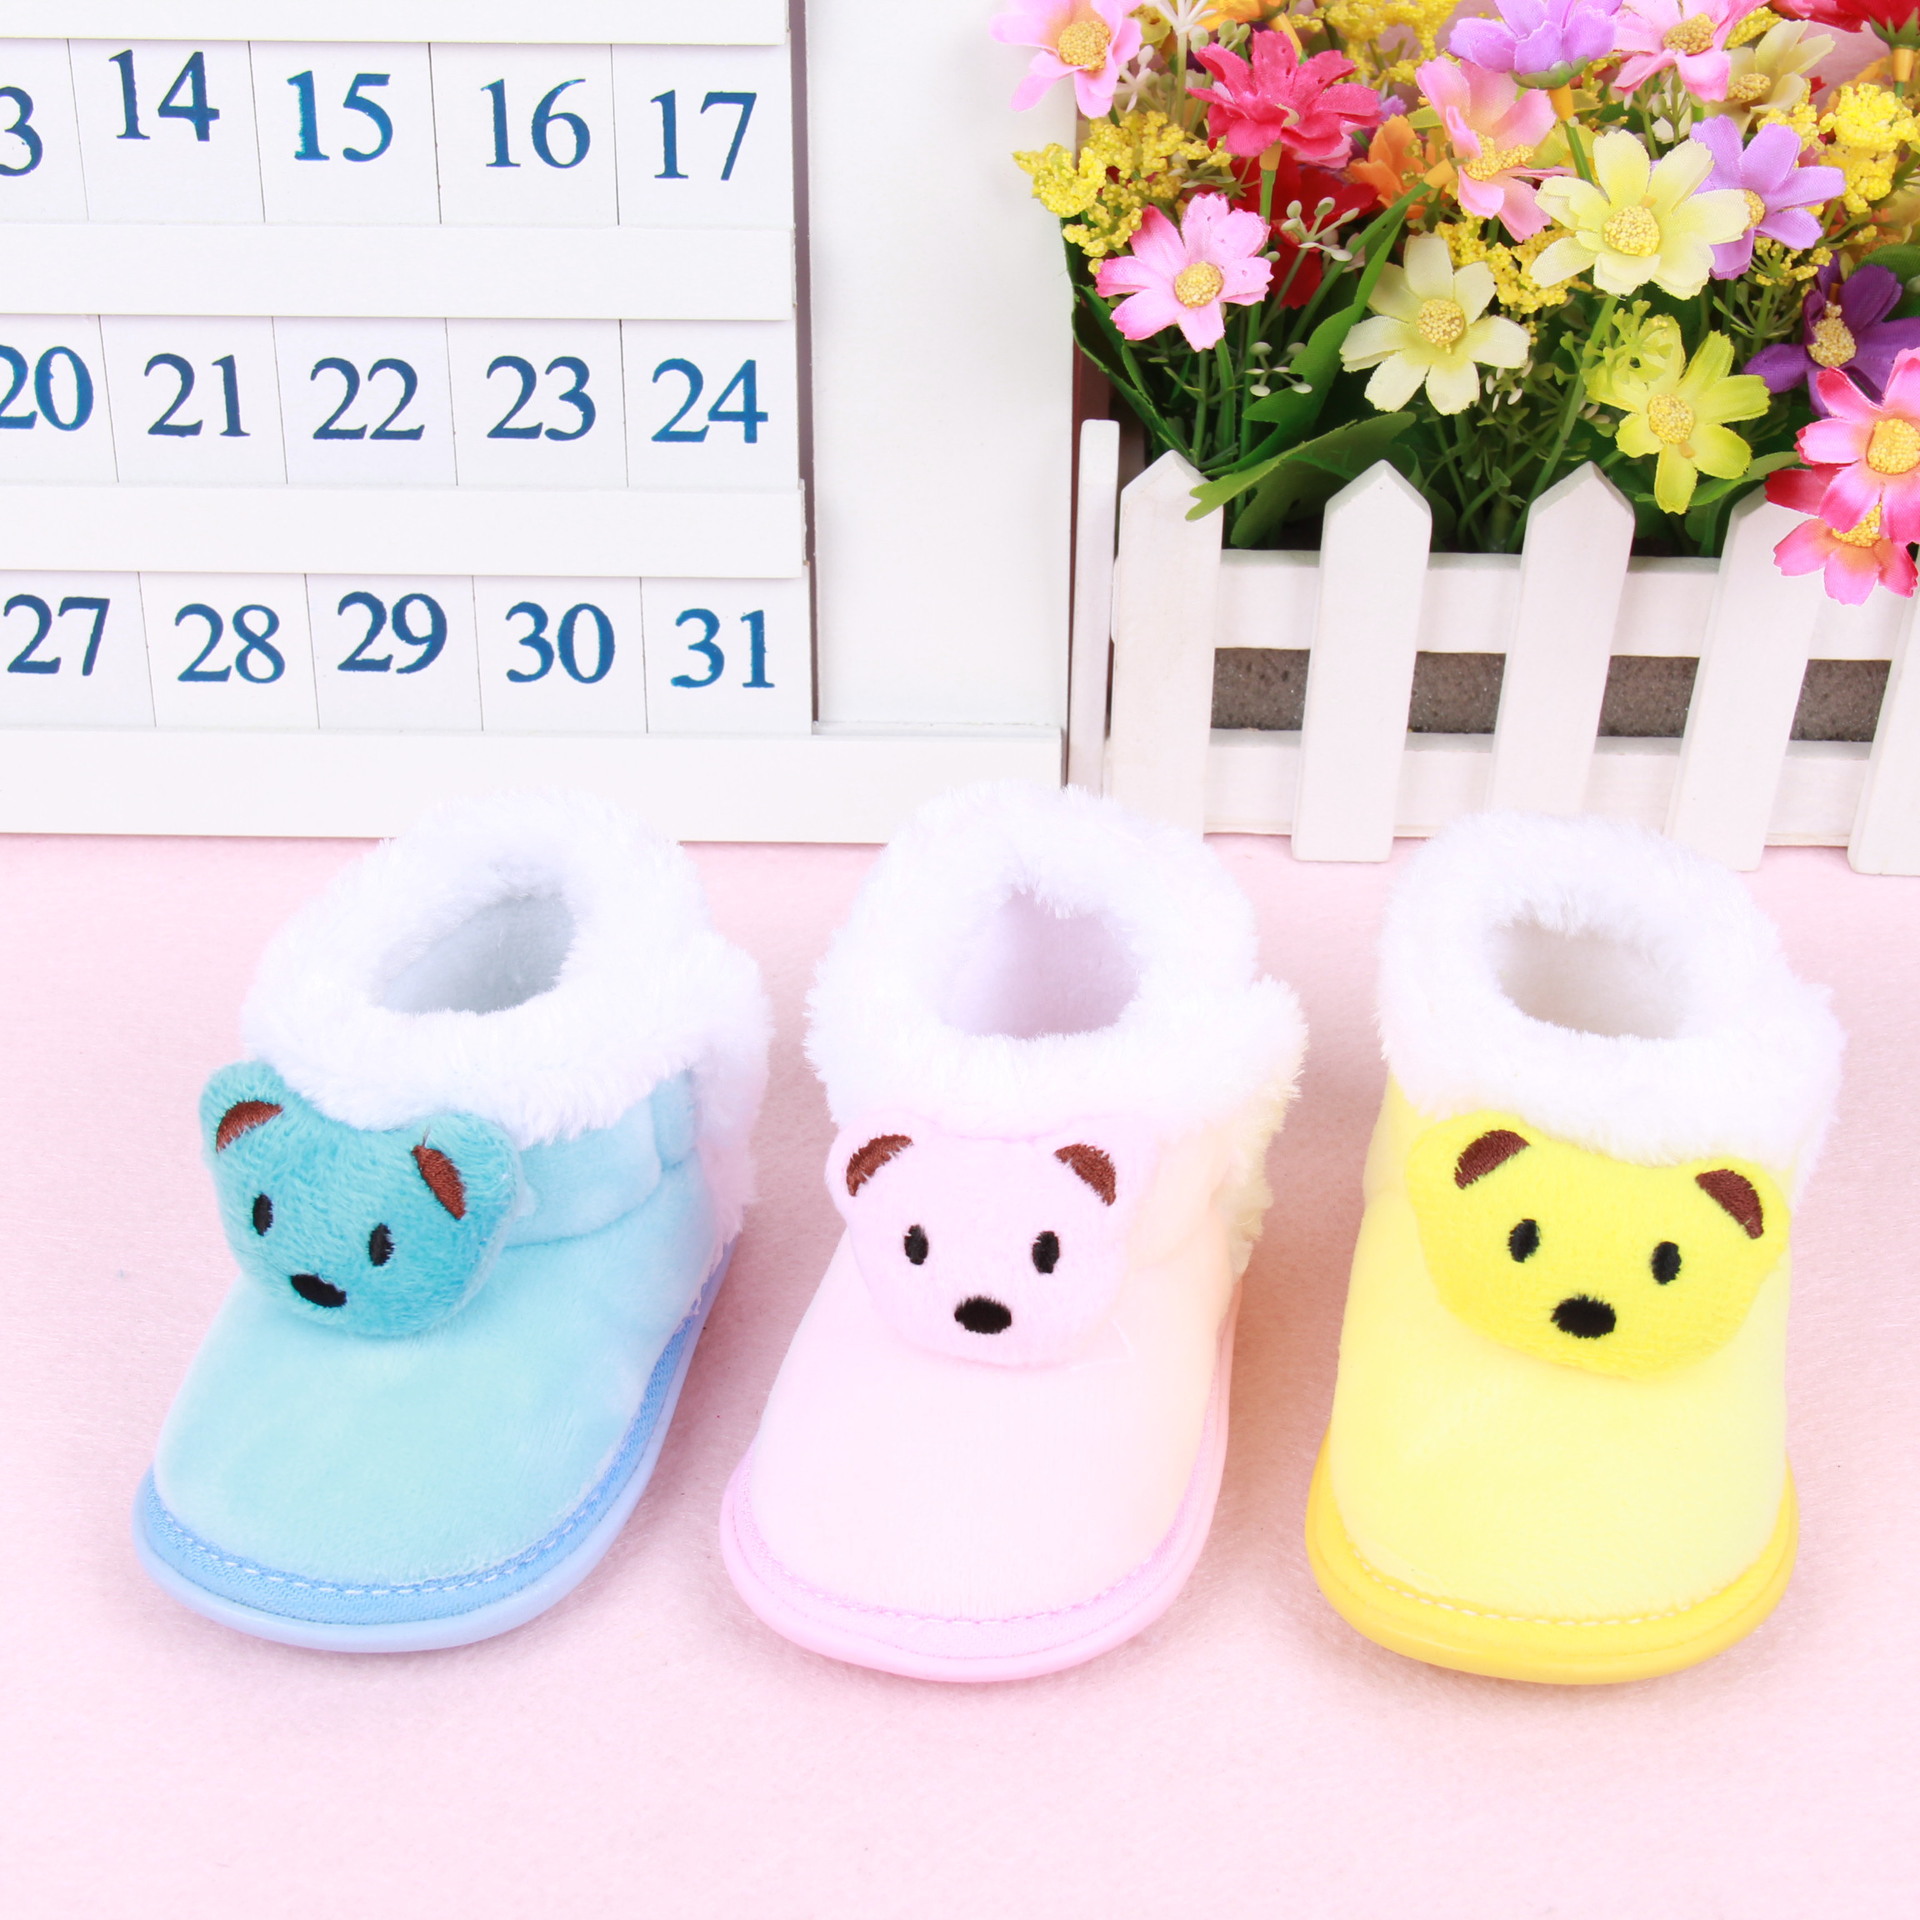 【厂家直销】冬季新款 婴幼儿宝宝靴子款卡通小熊胶底棉鞋 0-1岁